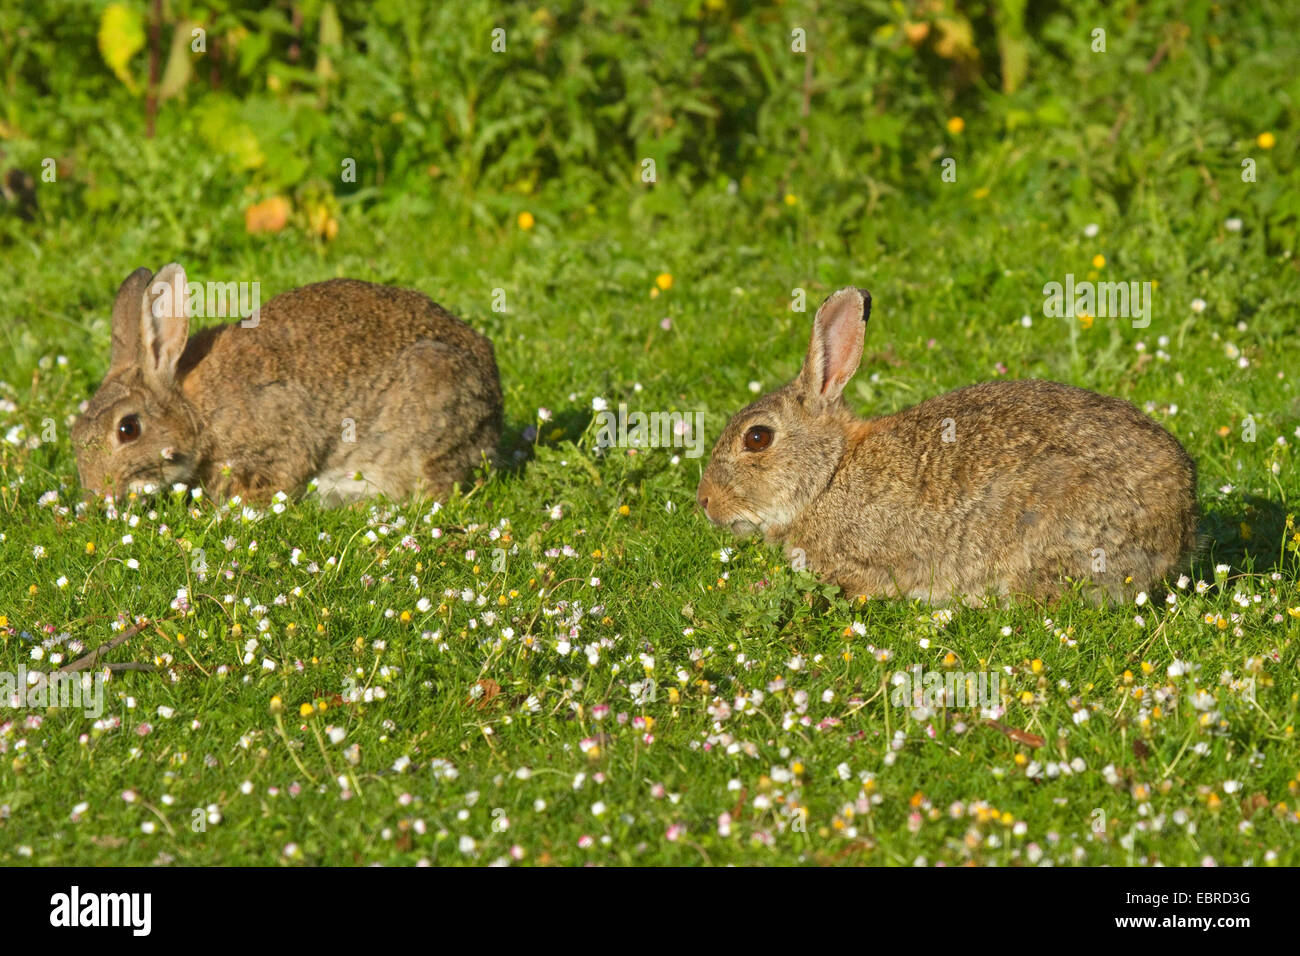 Lapin de garenne (Oryctolagus cuniculus), les lapins sauvages dans une prairie daisy en juin, l'ALLEMAGNE, Basse-Saxe, Norderney Banque D'Images